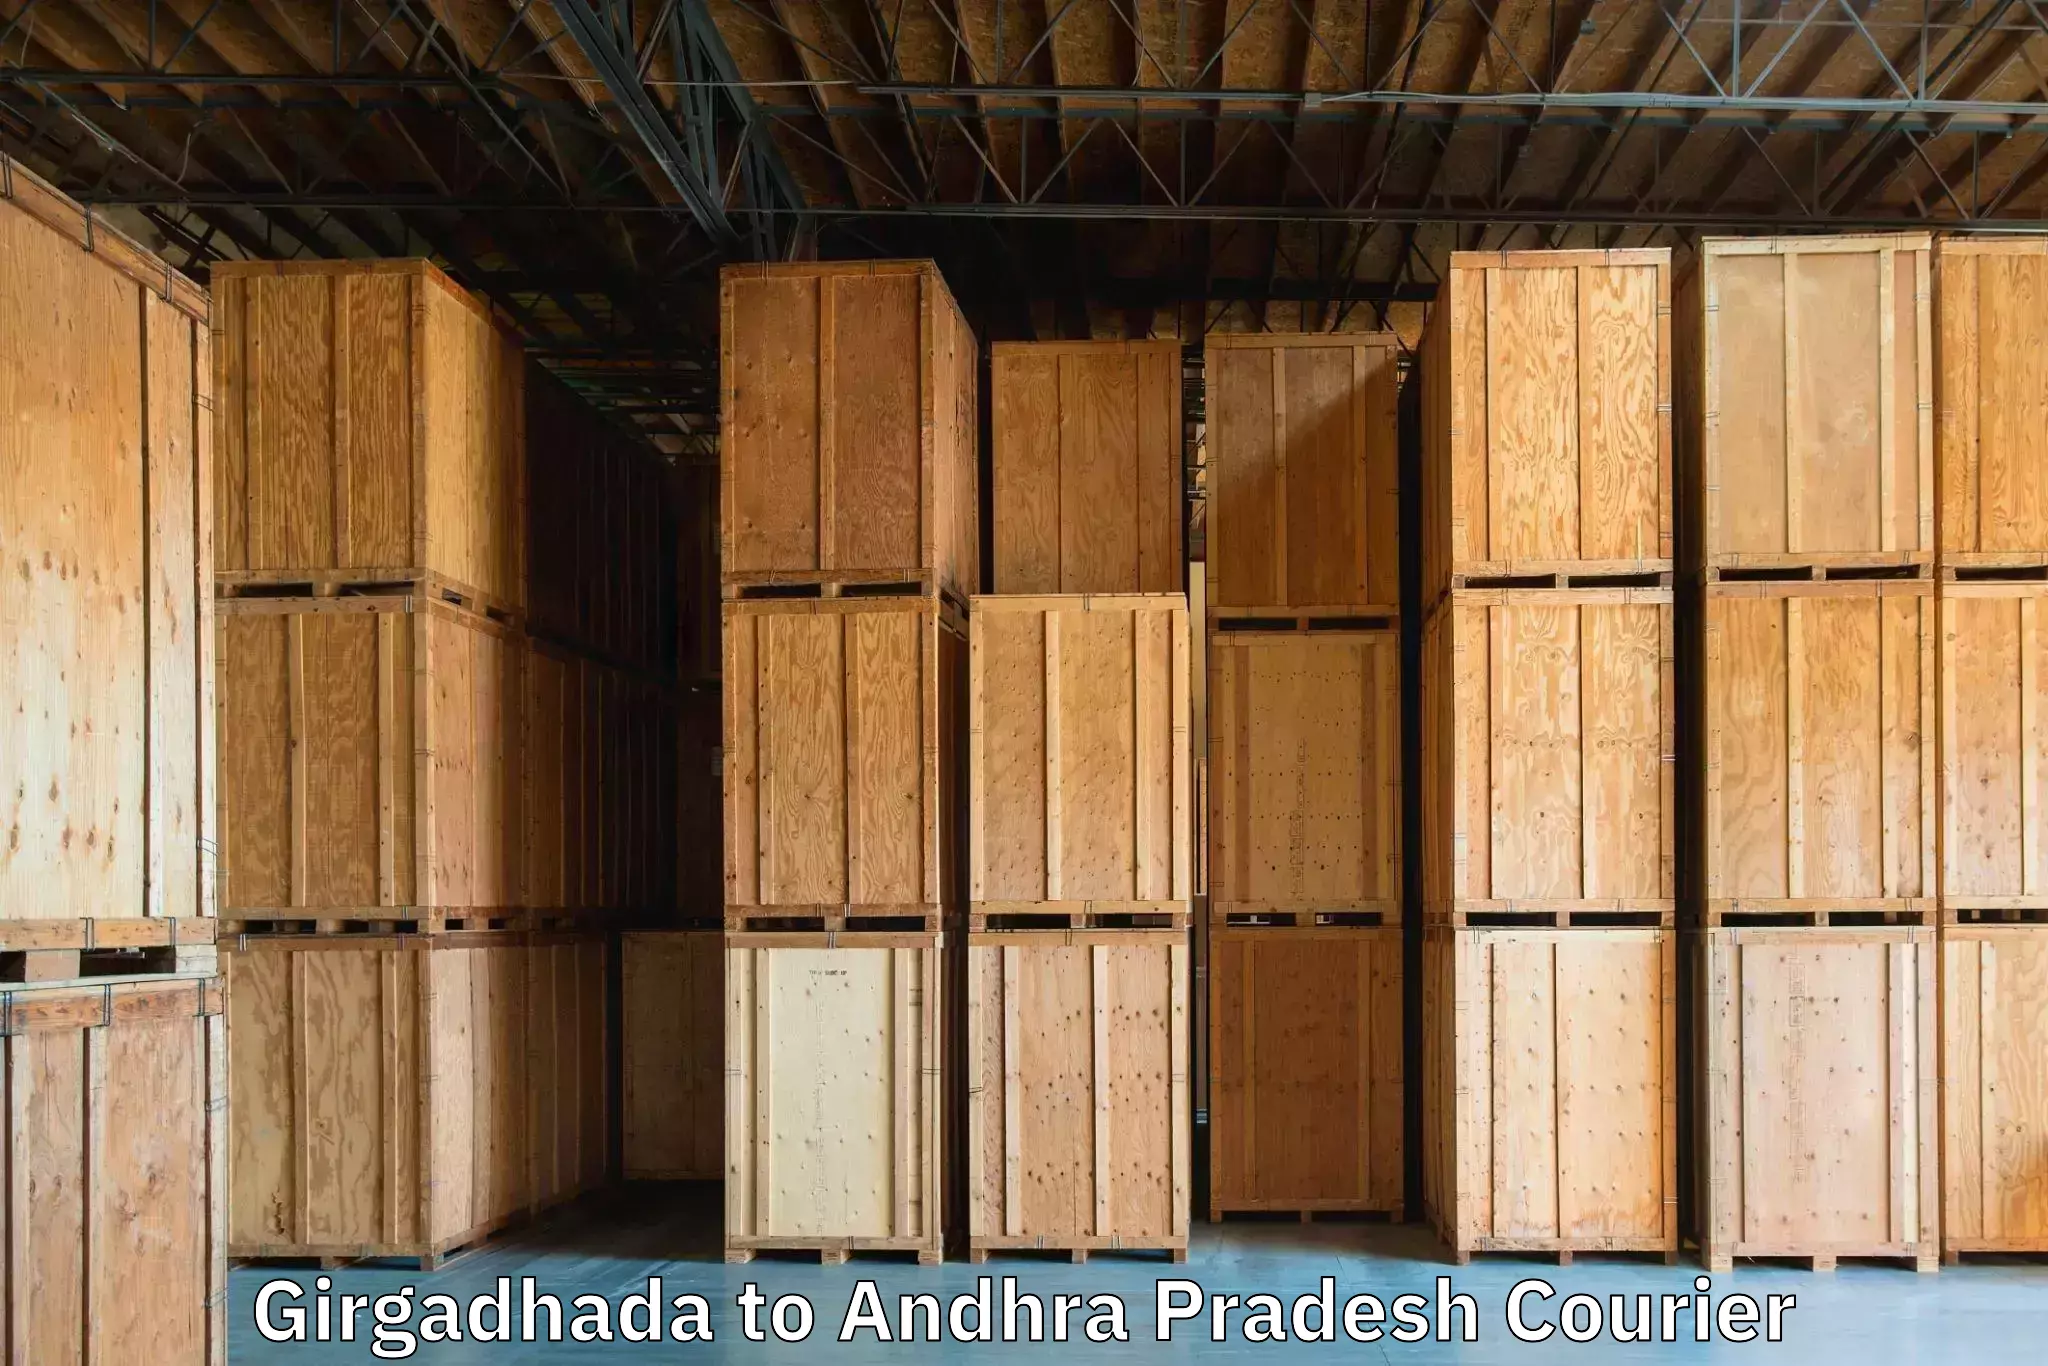 Doorstep luggage collection in Girgadhada to Changaroth